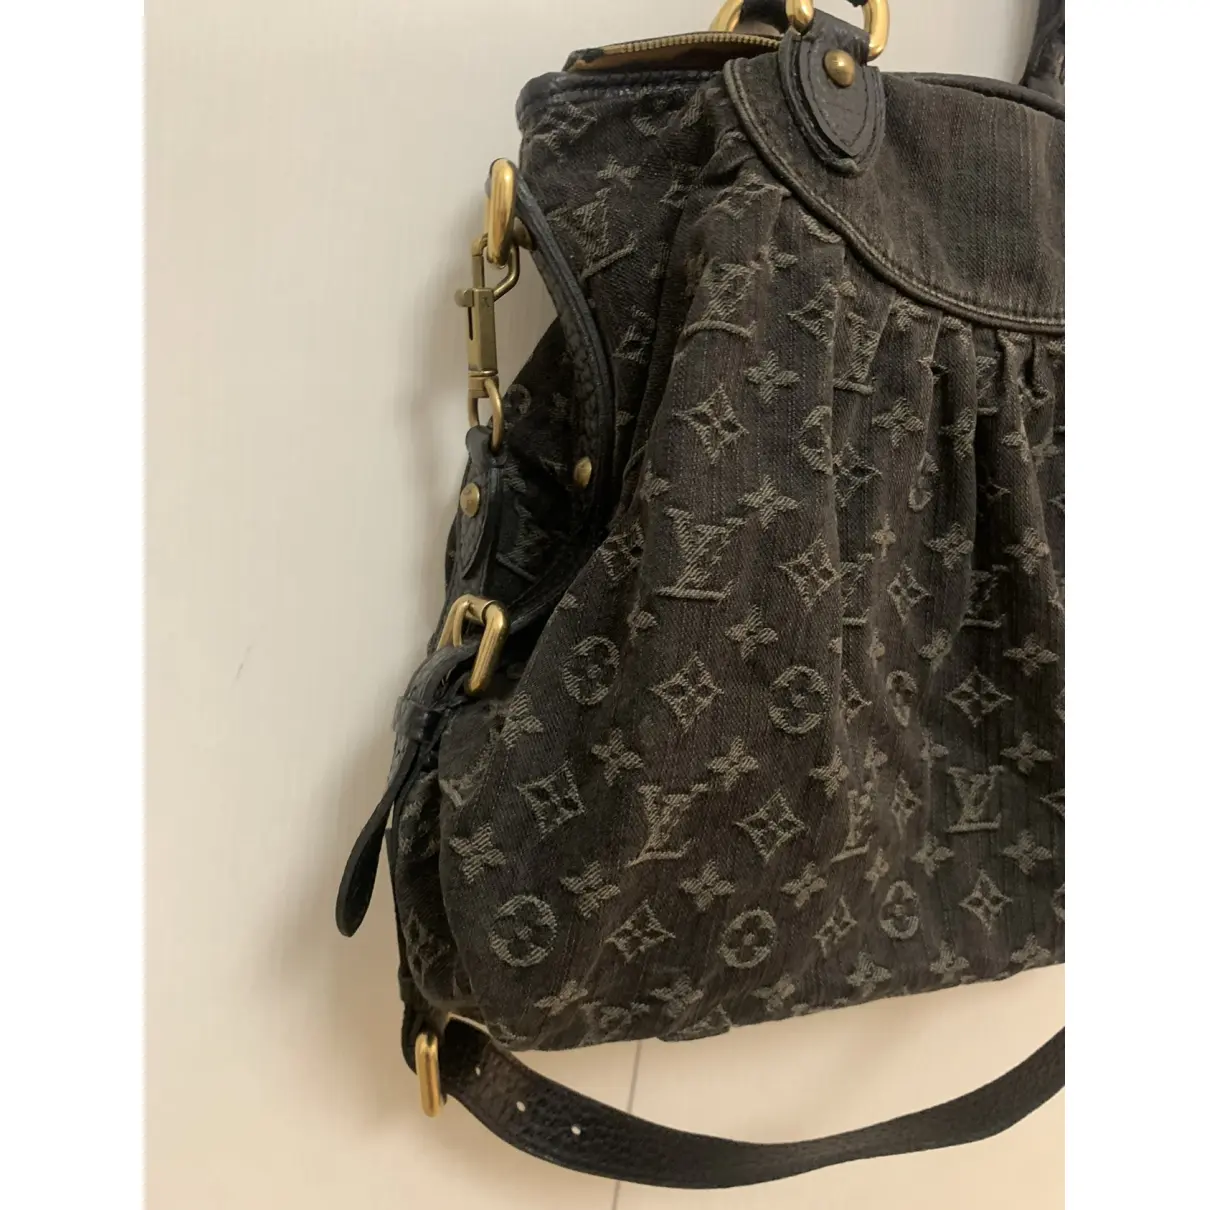 Buy Louis Vuitton Handbag online